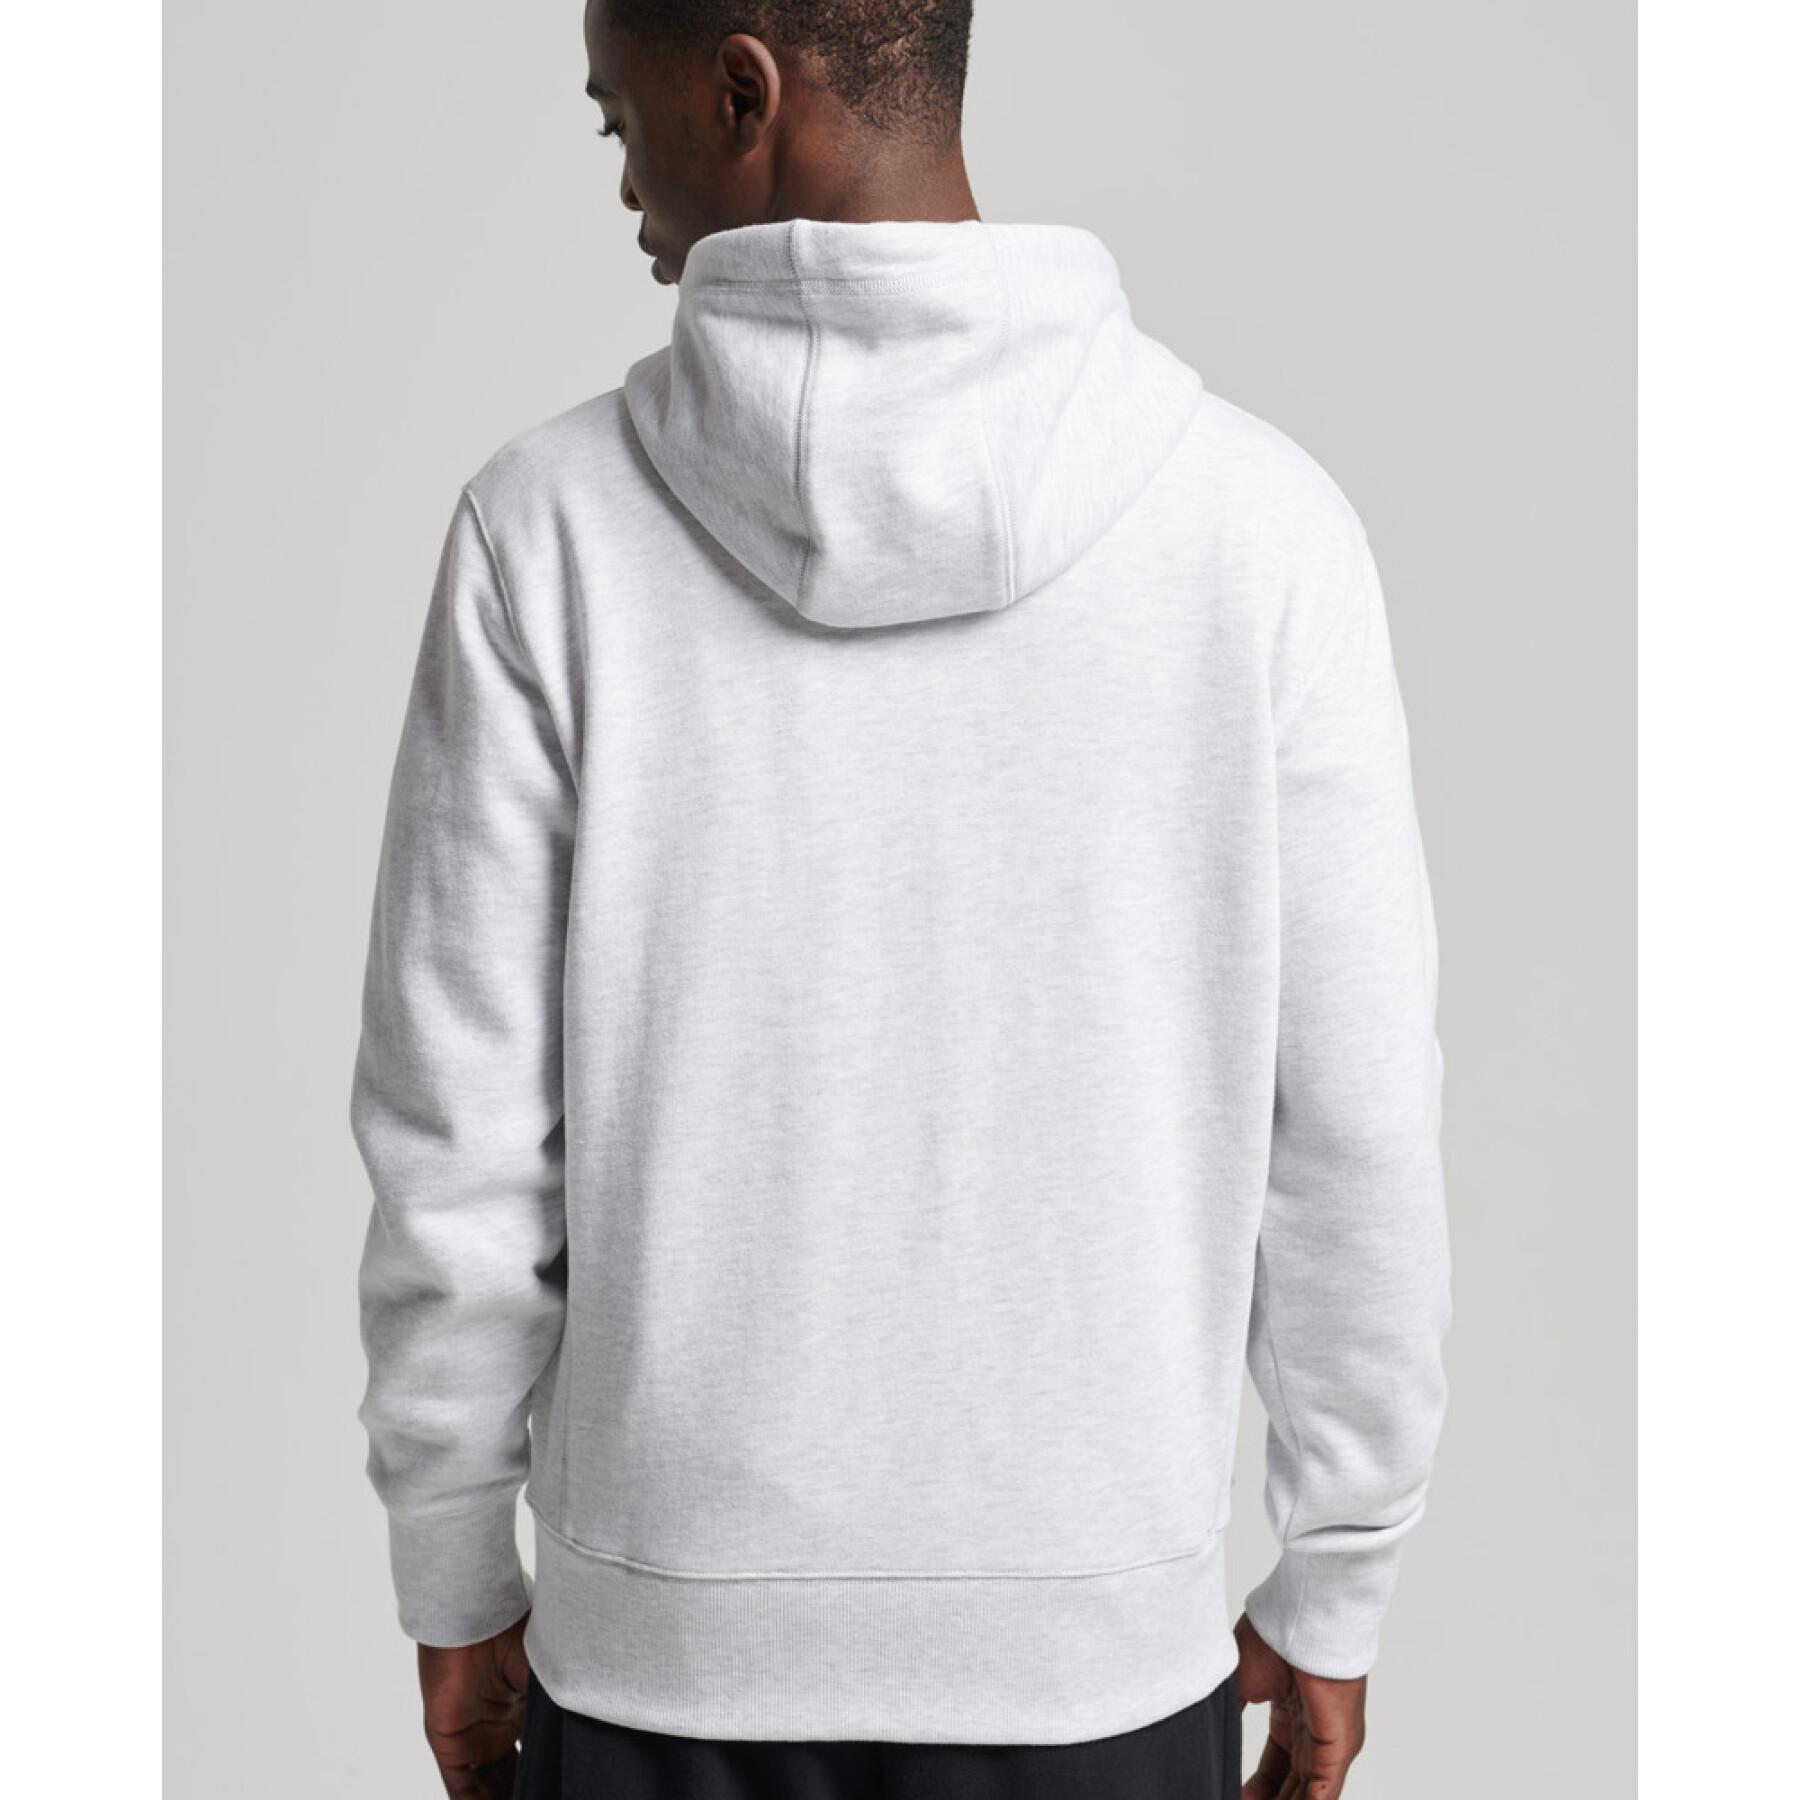 Hooded sweatshirt with zip Superdry Code Essential